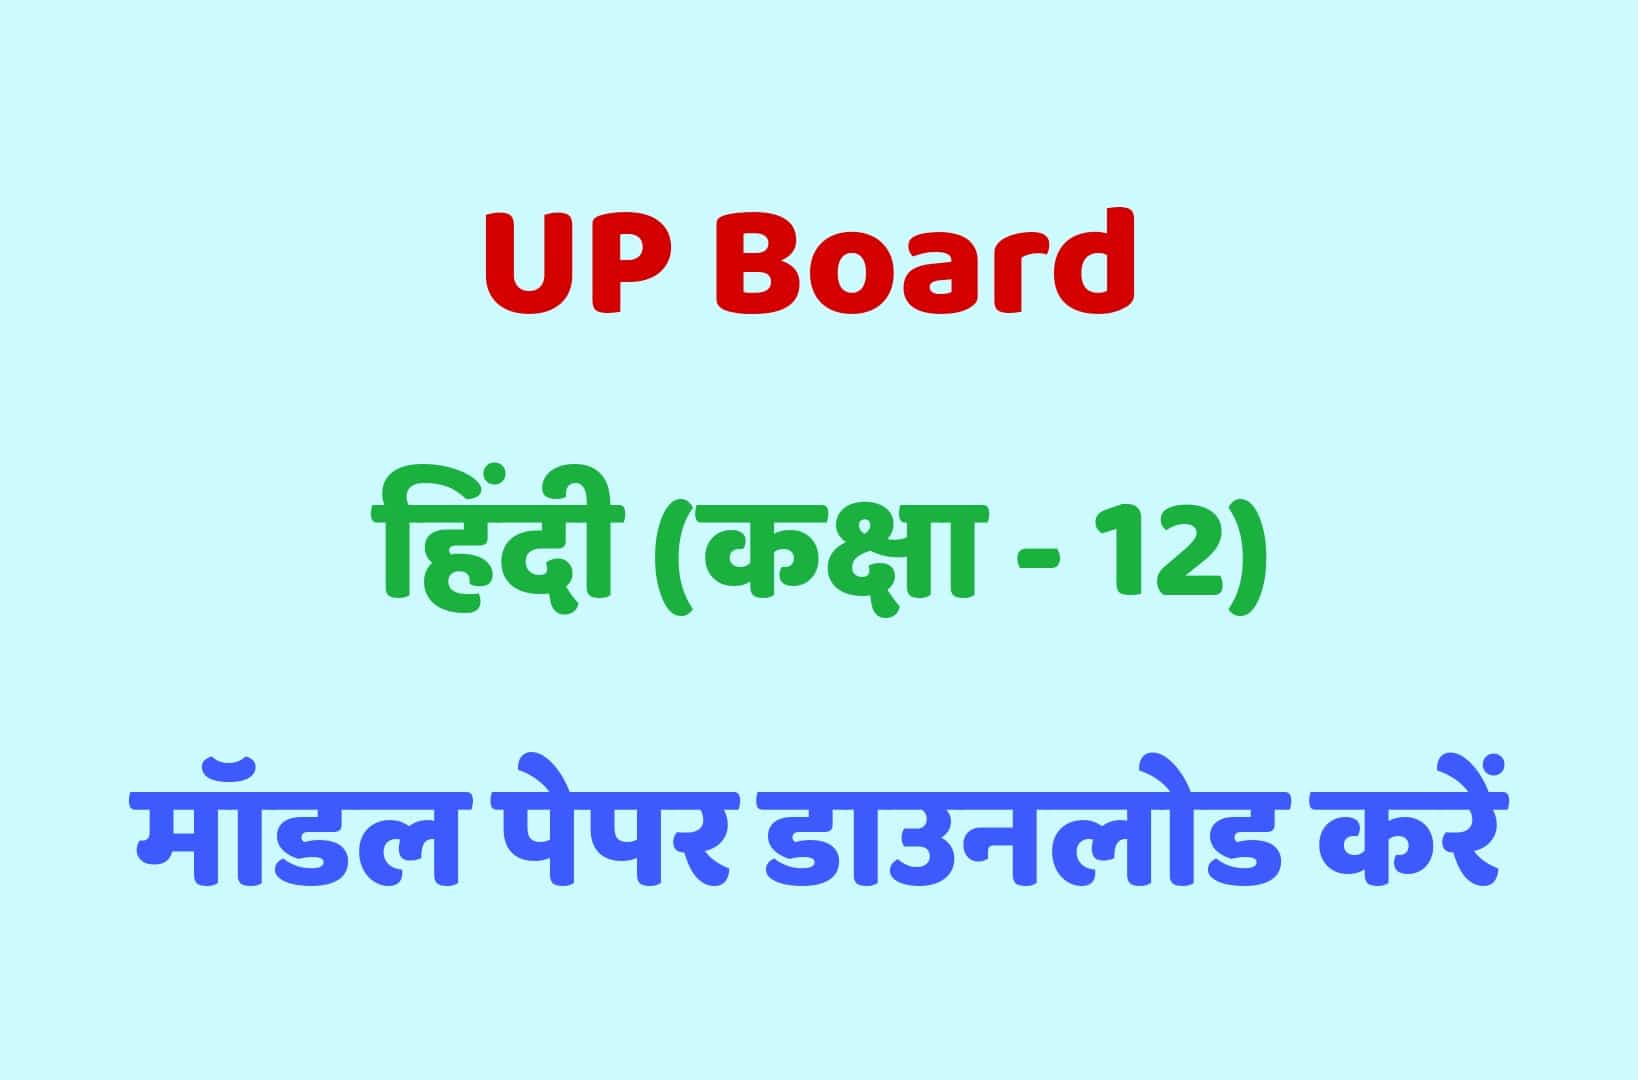 UP Board Class 12th हिंदी मॉडल पेपर - 6 : कक्षा 12 के हिंदी मॉडल पेपर को डाउनलोड करें